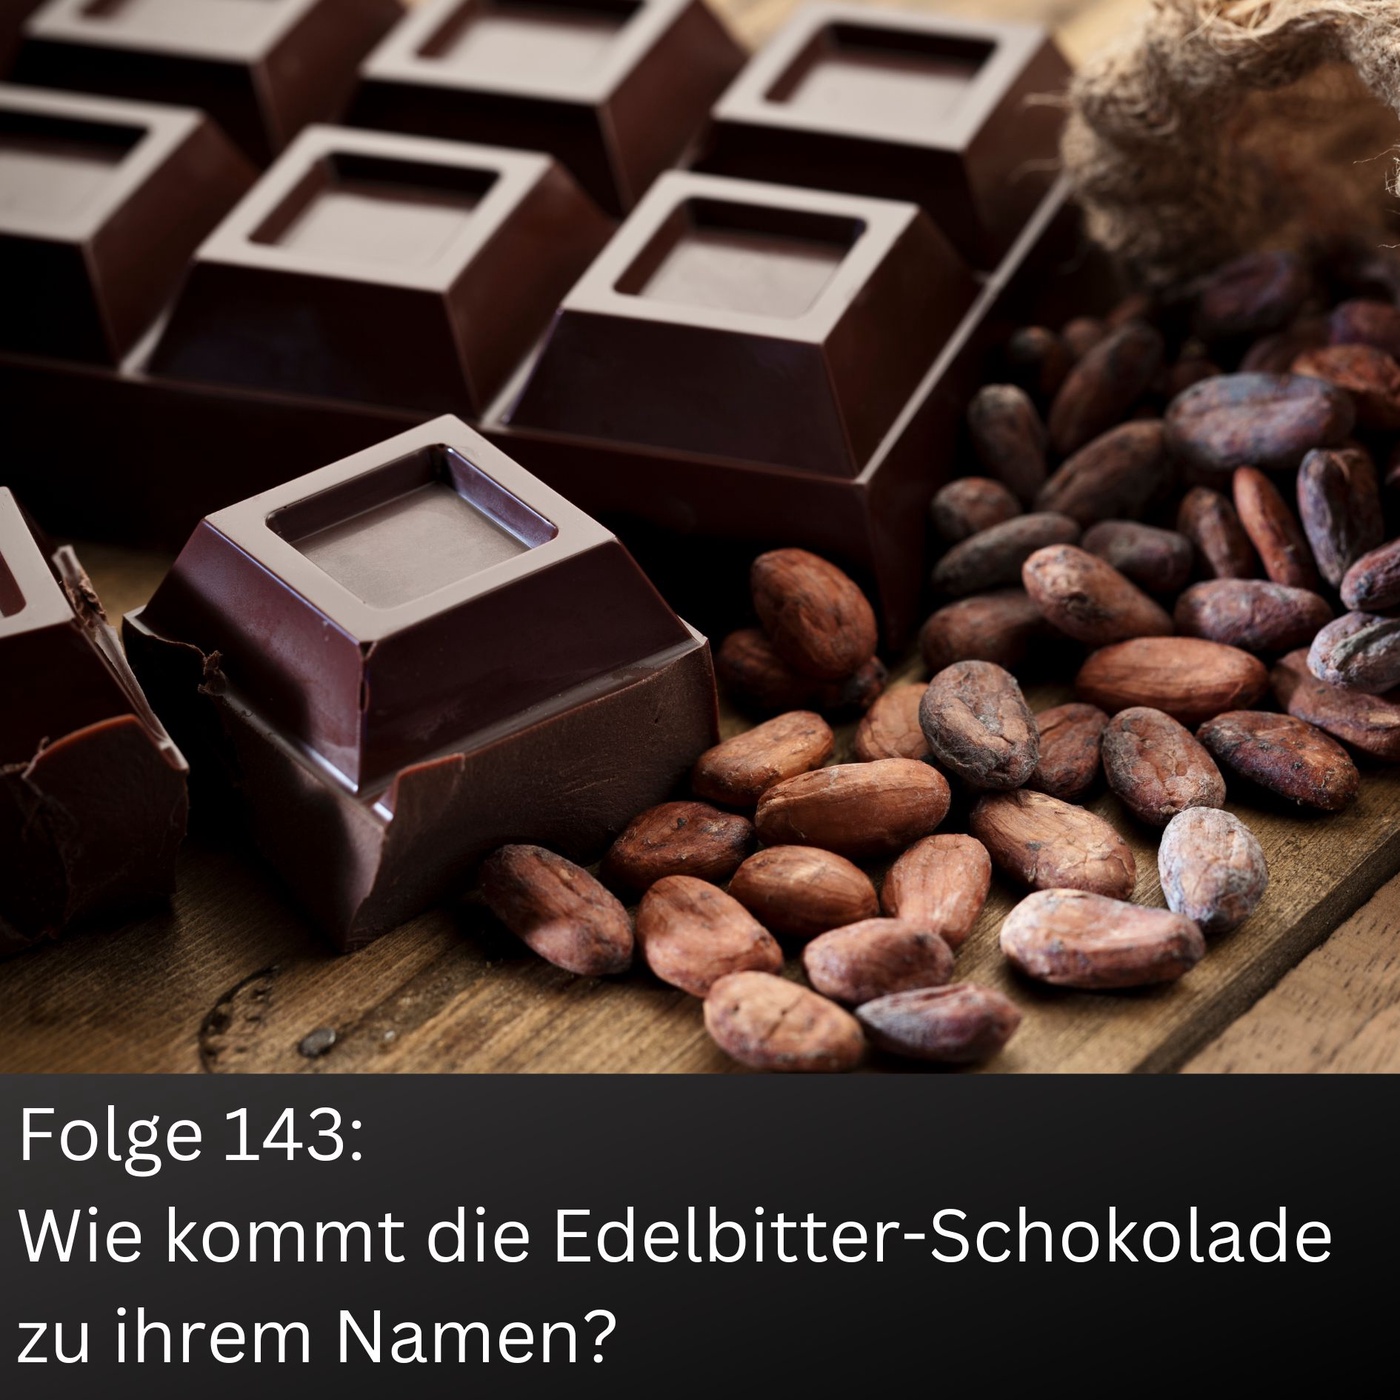 Wie kommt die Edelbitter-Schokolade zu ihrem Namen?